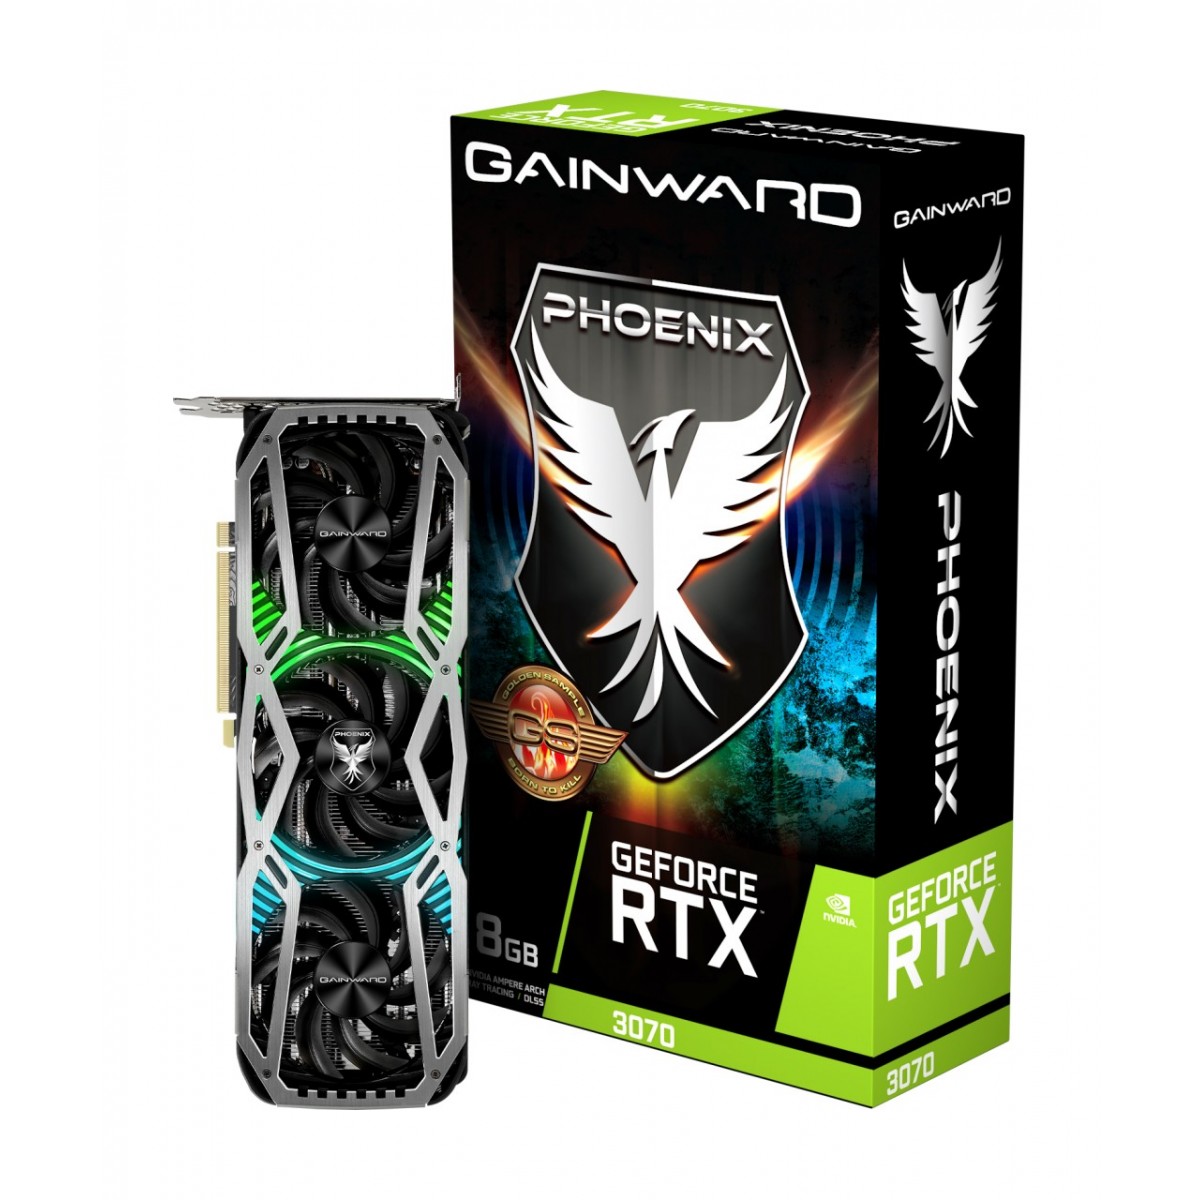 Gainward GeForce RTX 3070 Phoenix "GS" - GeForce RTX 3070 - 8 GB - GDDR6 - 256 bit - 7680 x 4320 pixels - PCI Express x16 4.0